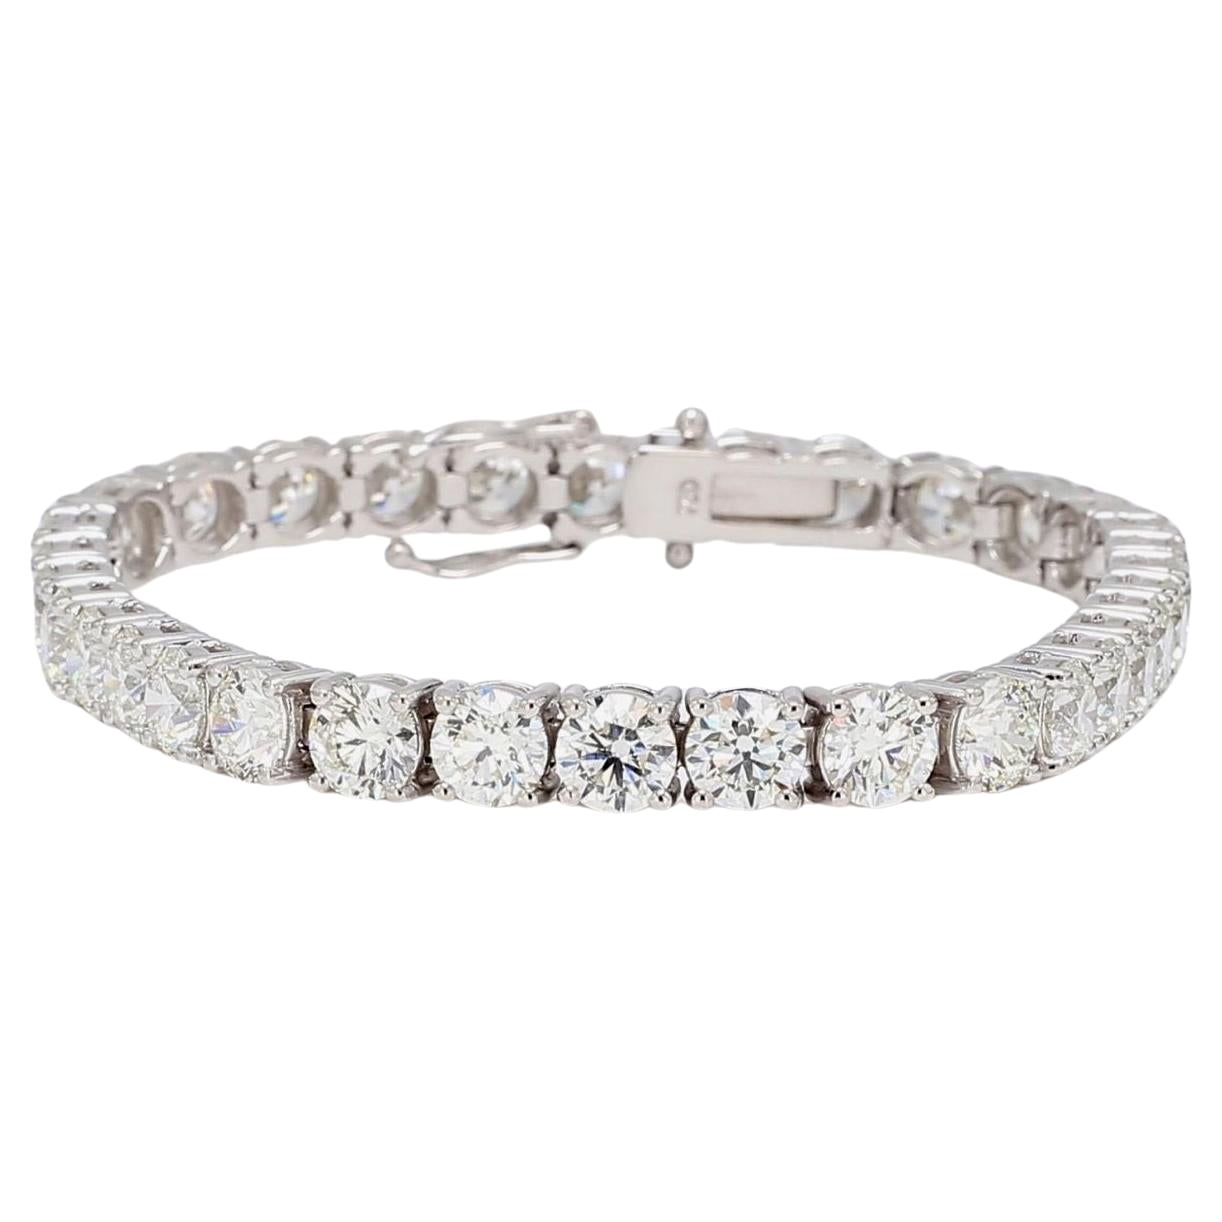 Bracelet de tennis certifié GIA de 11 carats de diamants ronds taillés en brillant